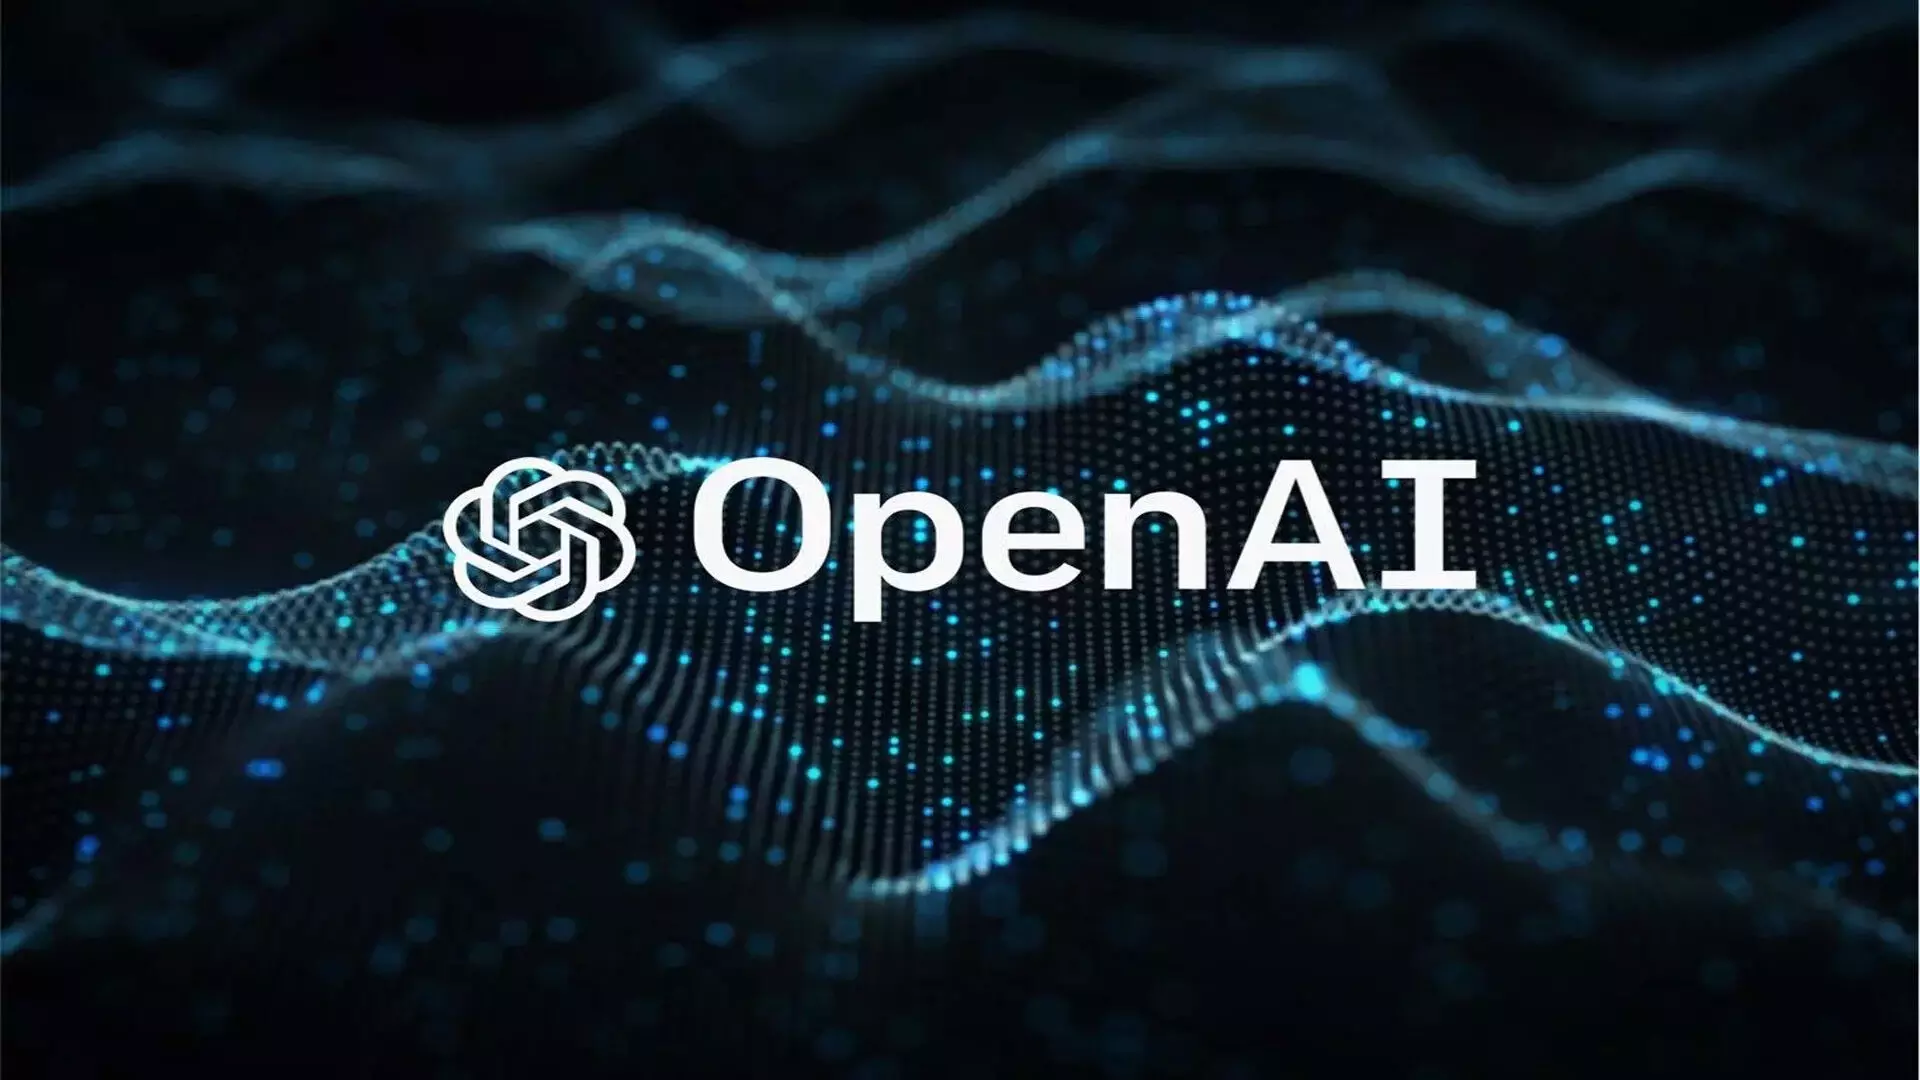 OpenAI चैटजीपीटी को बिना साइन-अप के सभी के लिए सुलभ बनाएगा